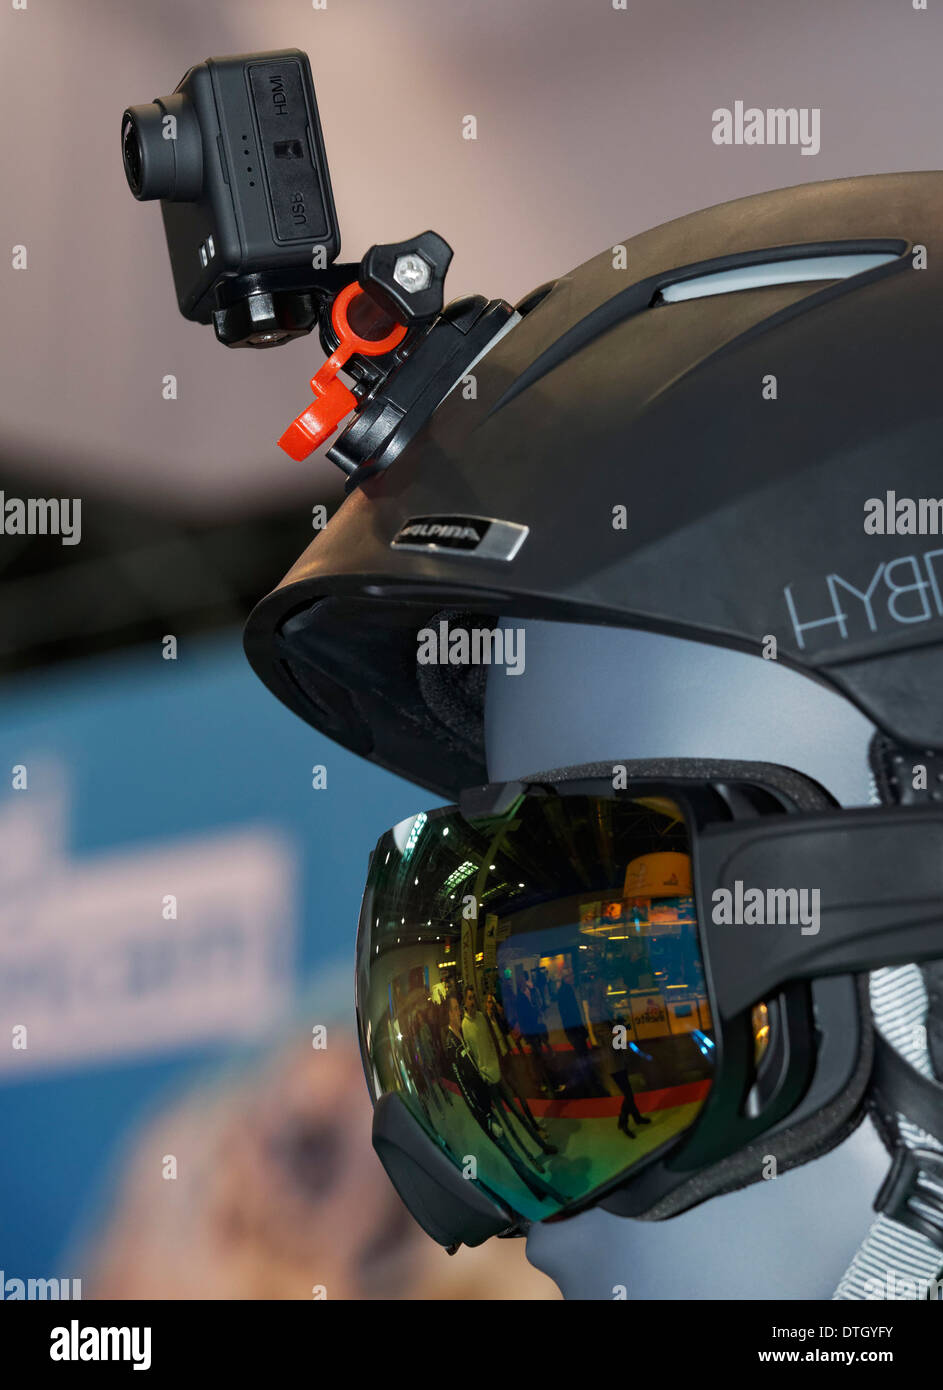 Helm-Kamera oder Actioncam, montiert auf einem Skihelm oder Snowboard Helm  Stockfotografie - Alamy